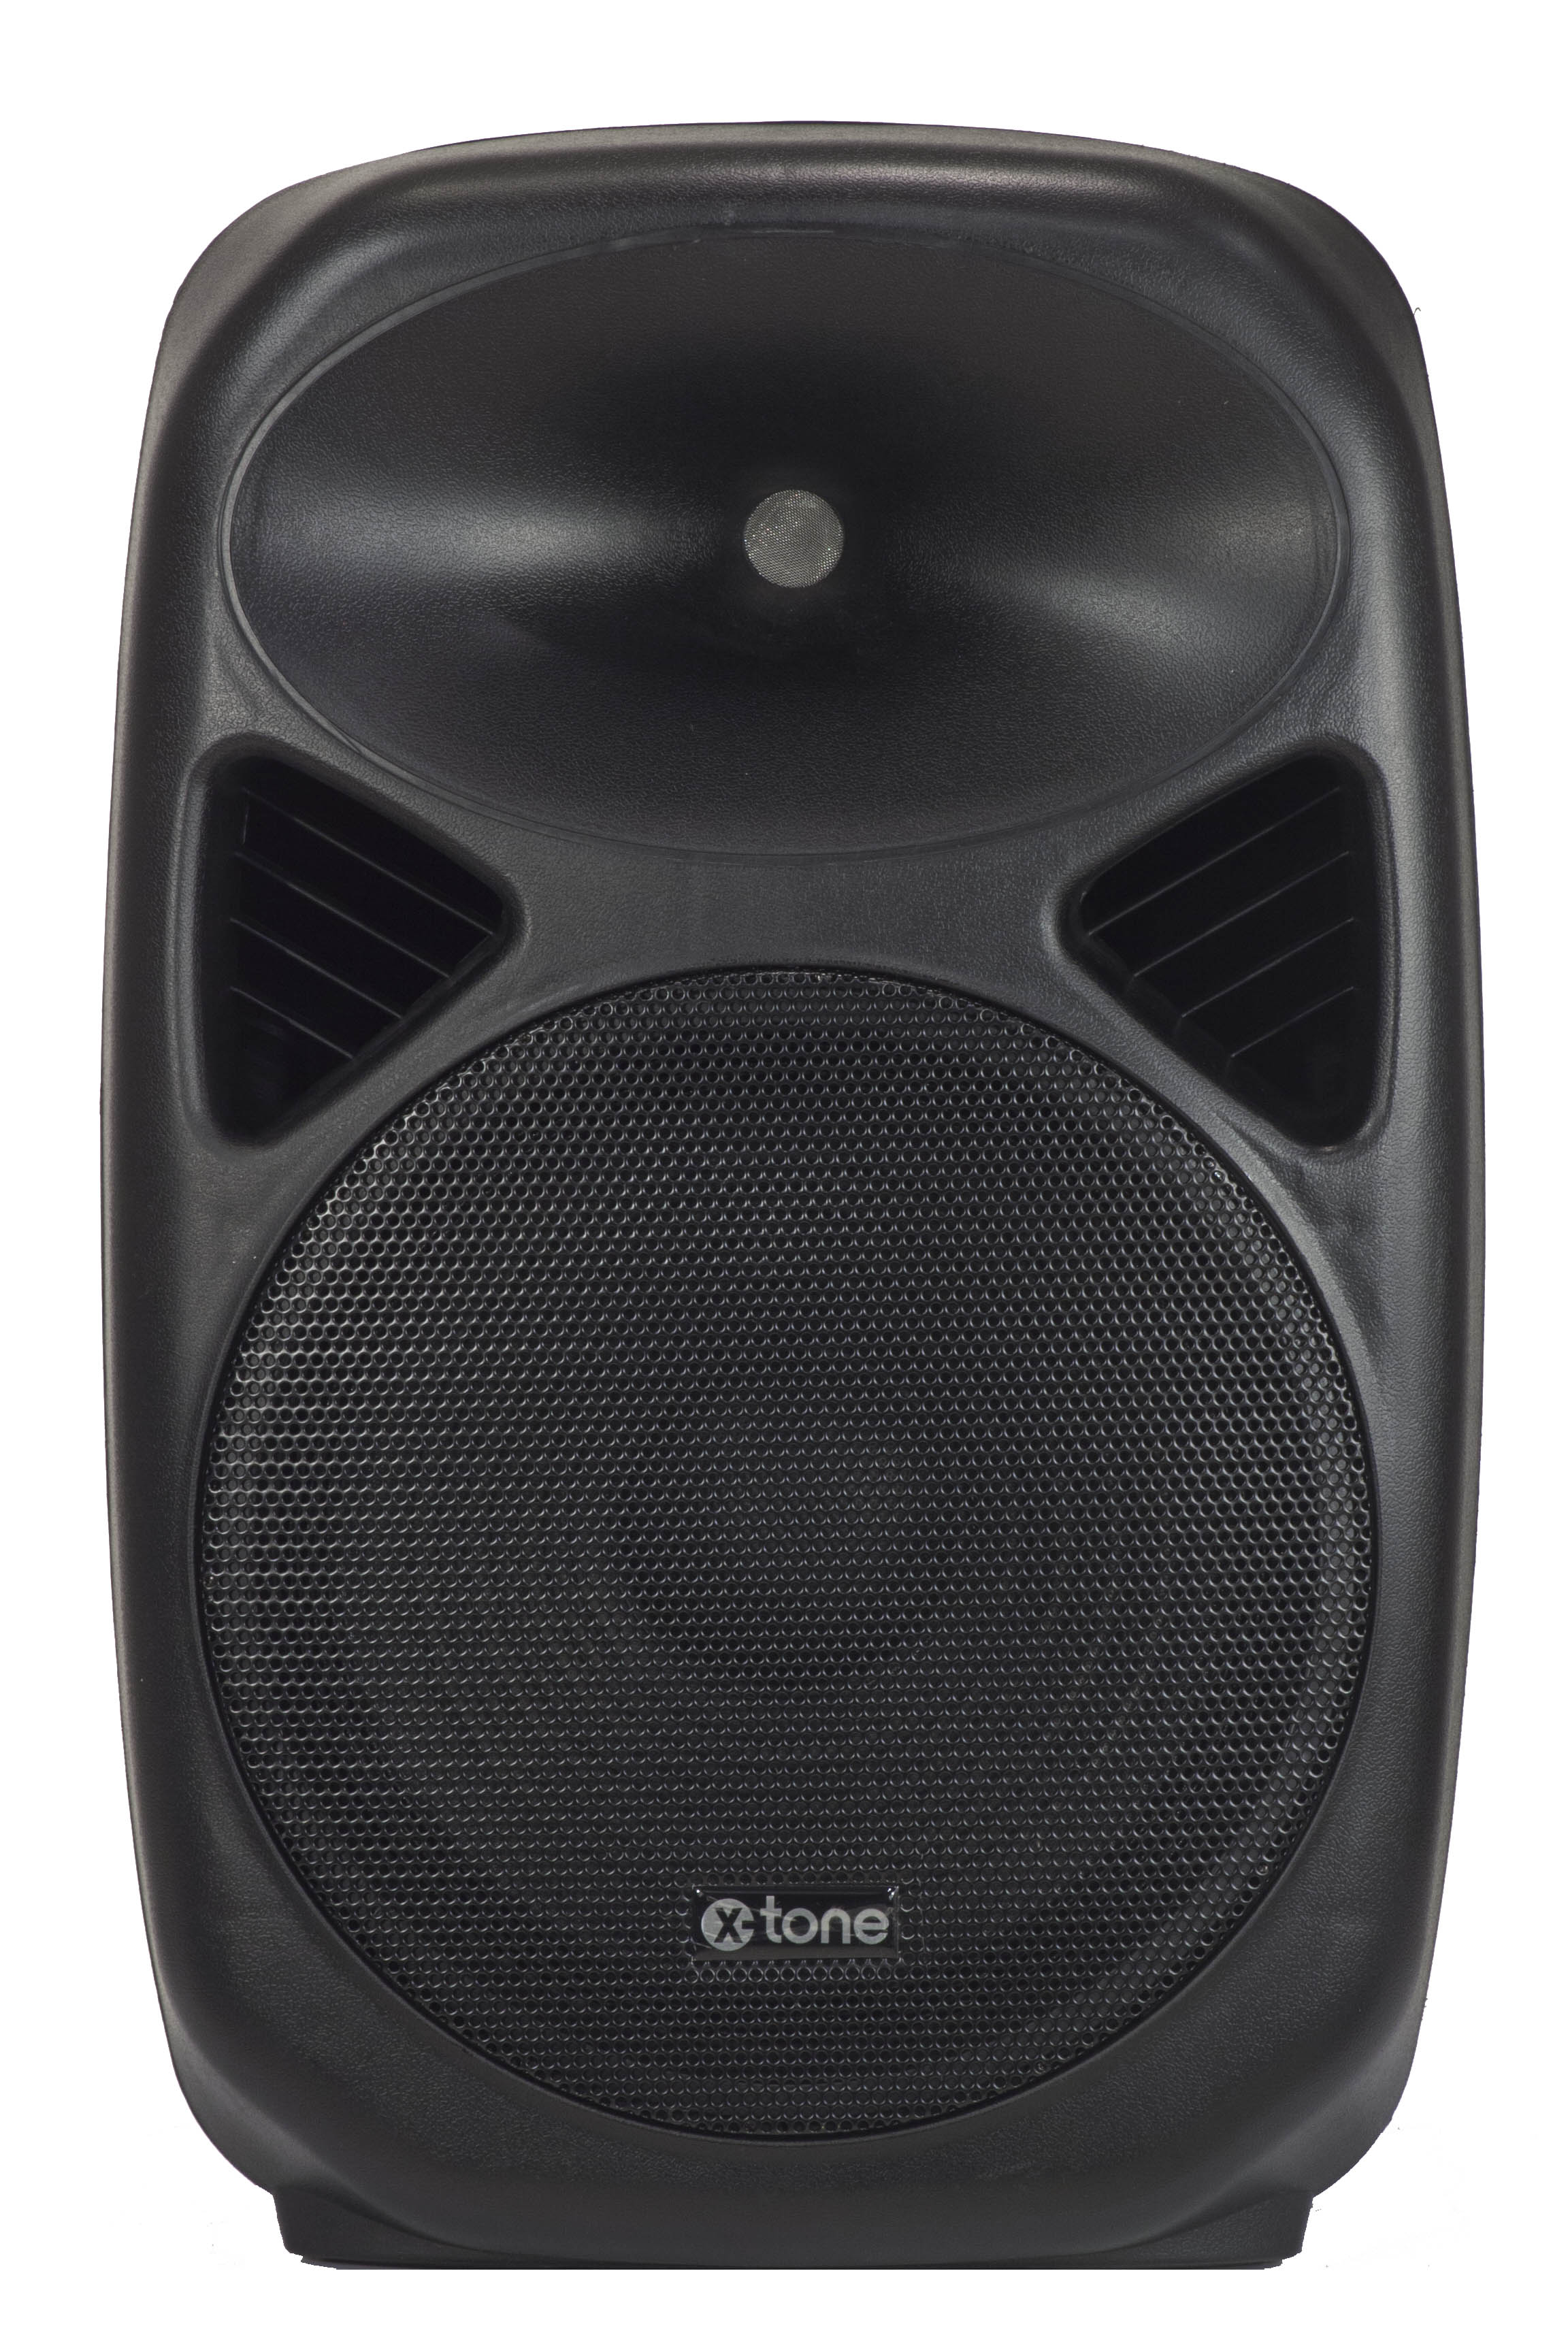 X-tone Sma-12 - Active full-range speaker - Variation 1